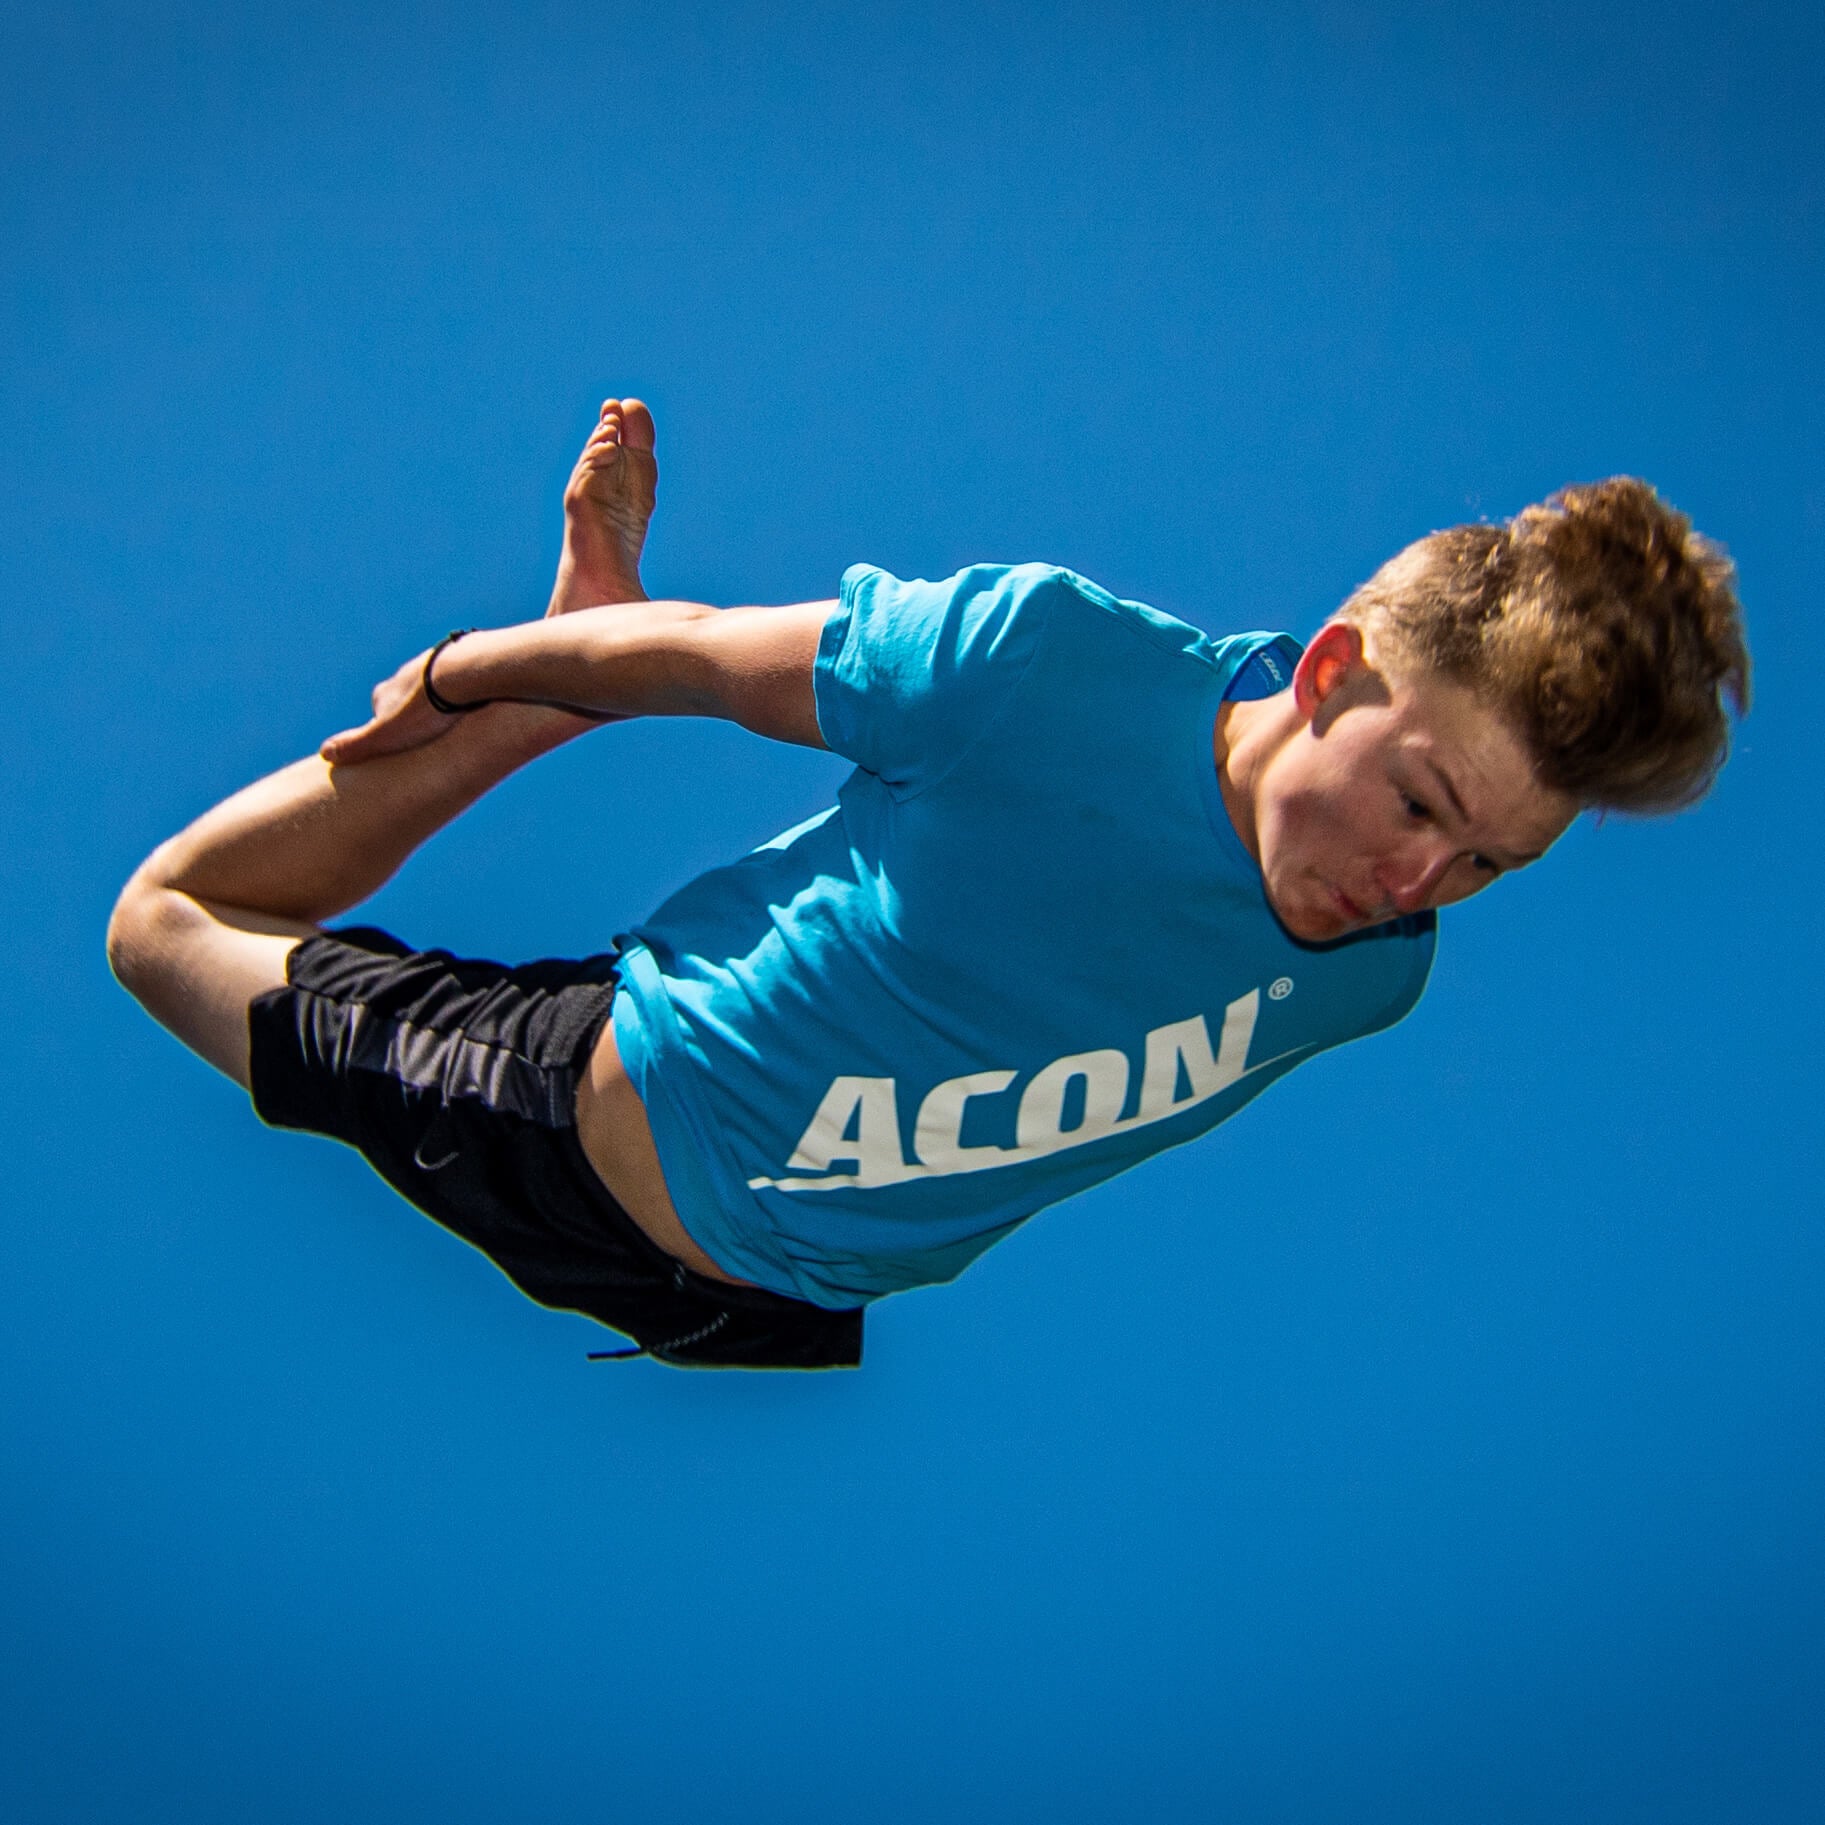 En pojke i en blå acon t-shirt hoppar studsmatta.